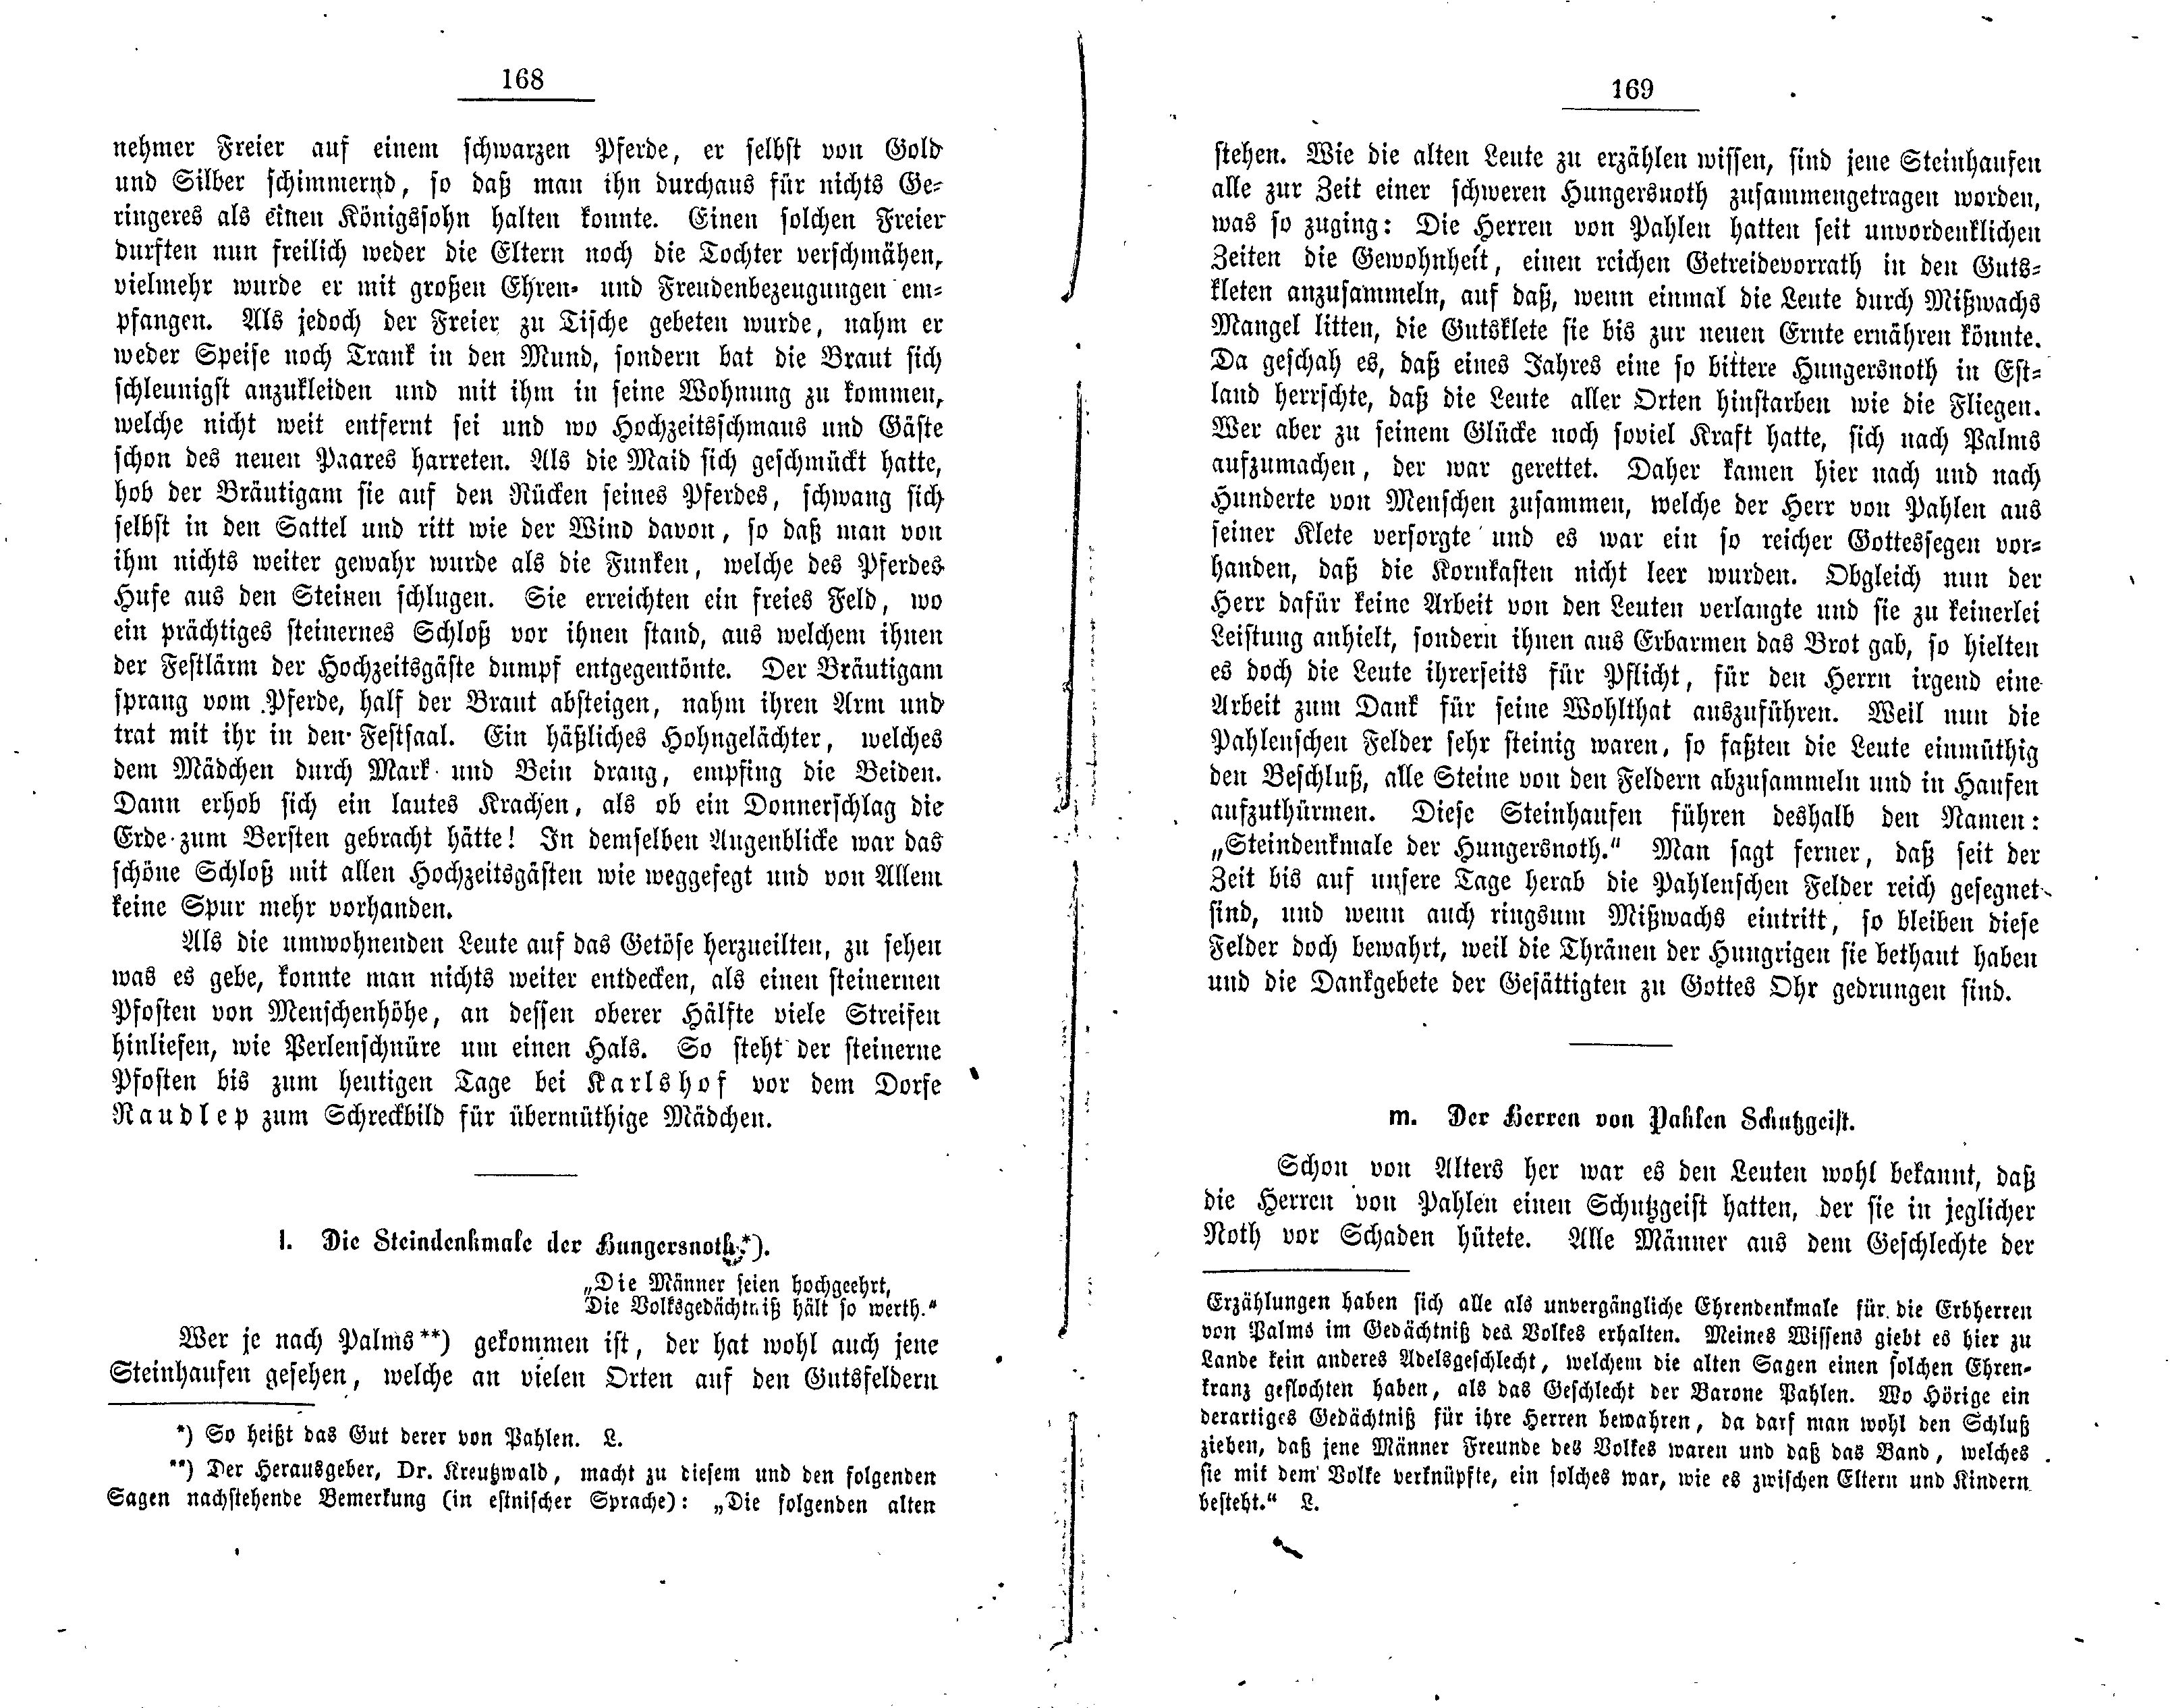 Der Herren von Pahlen Schutzgeist (1881) | 1. (168-169) Main body of text